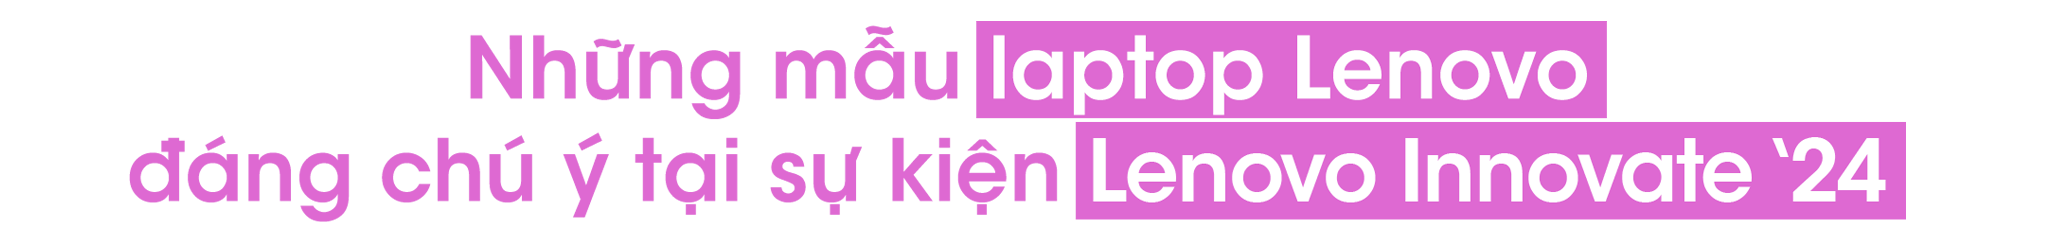 laptop-lenovo-Innovation.png